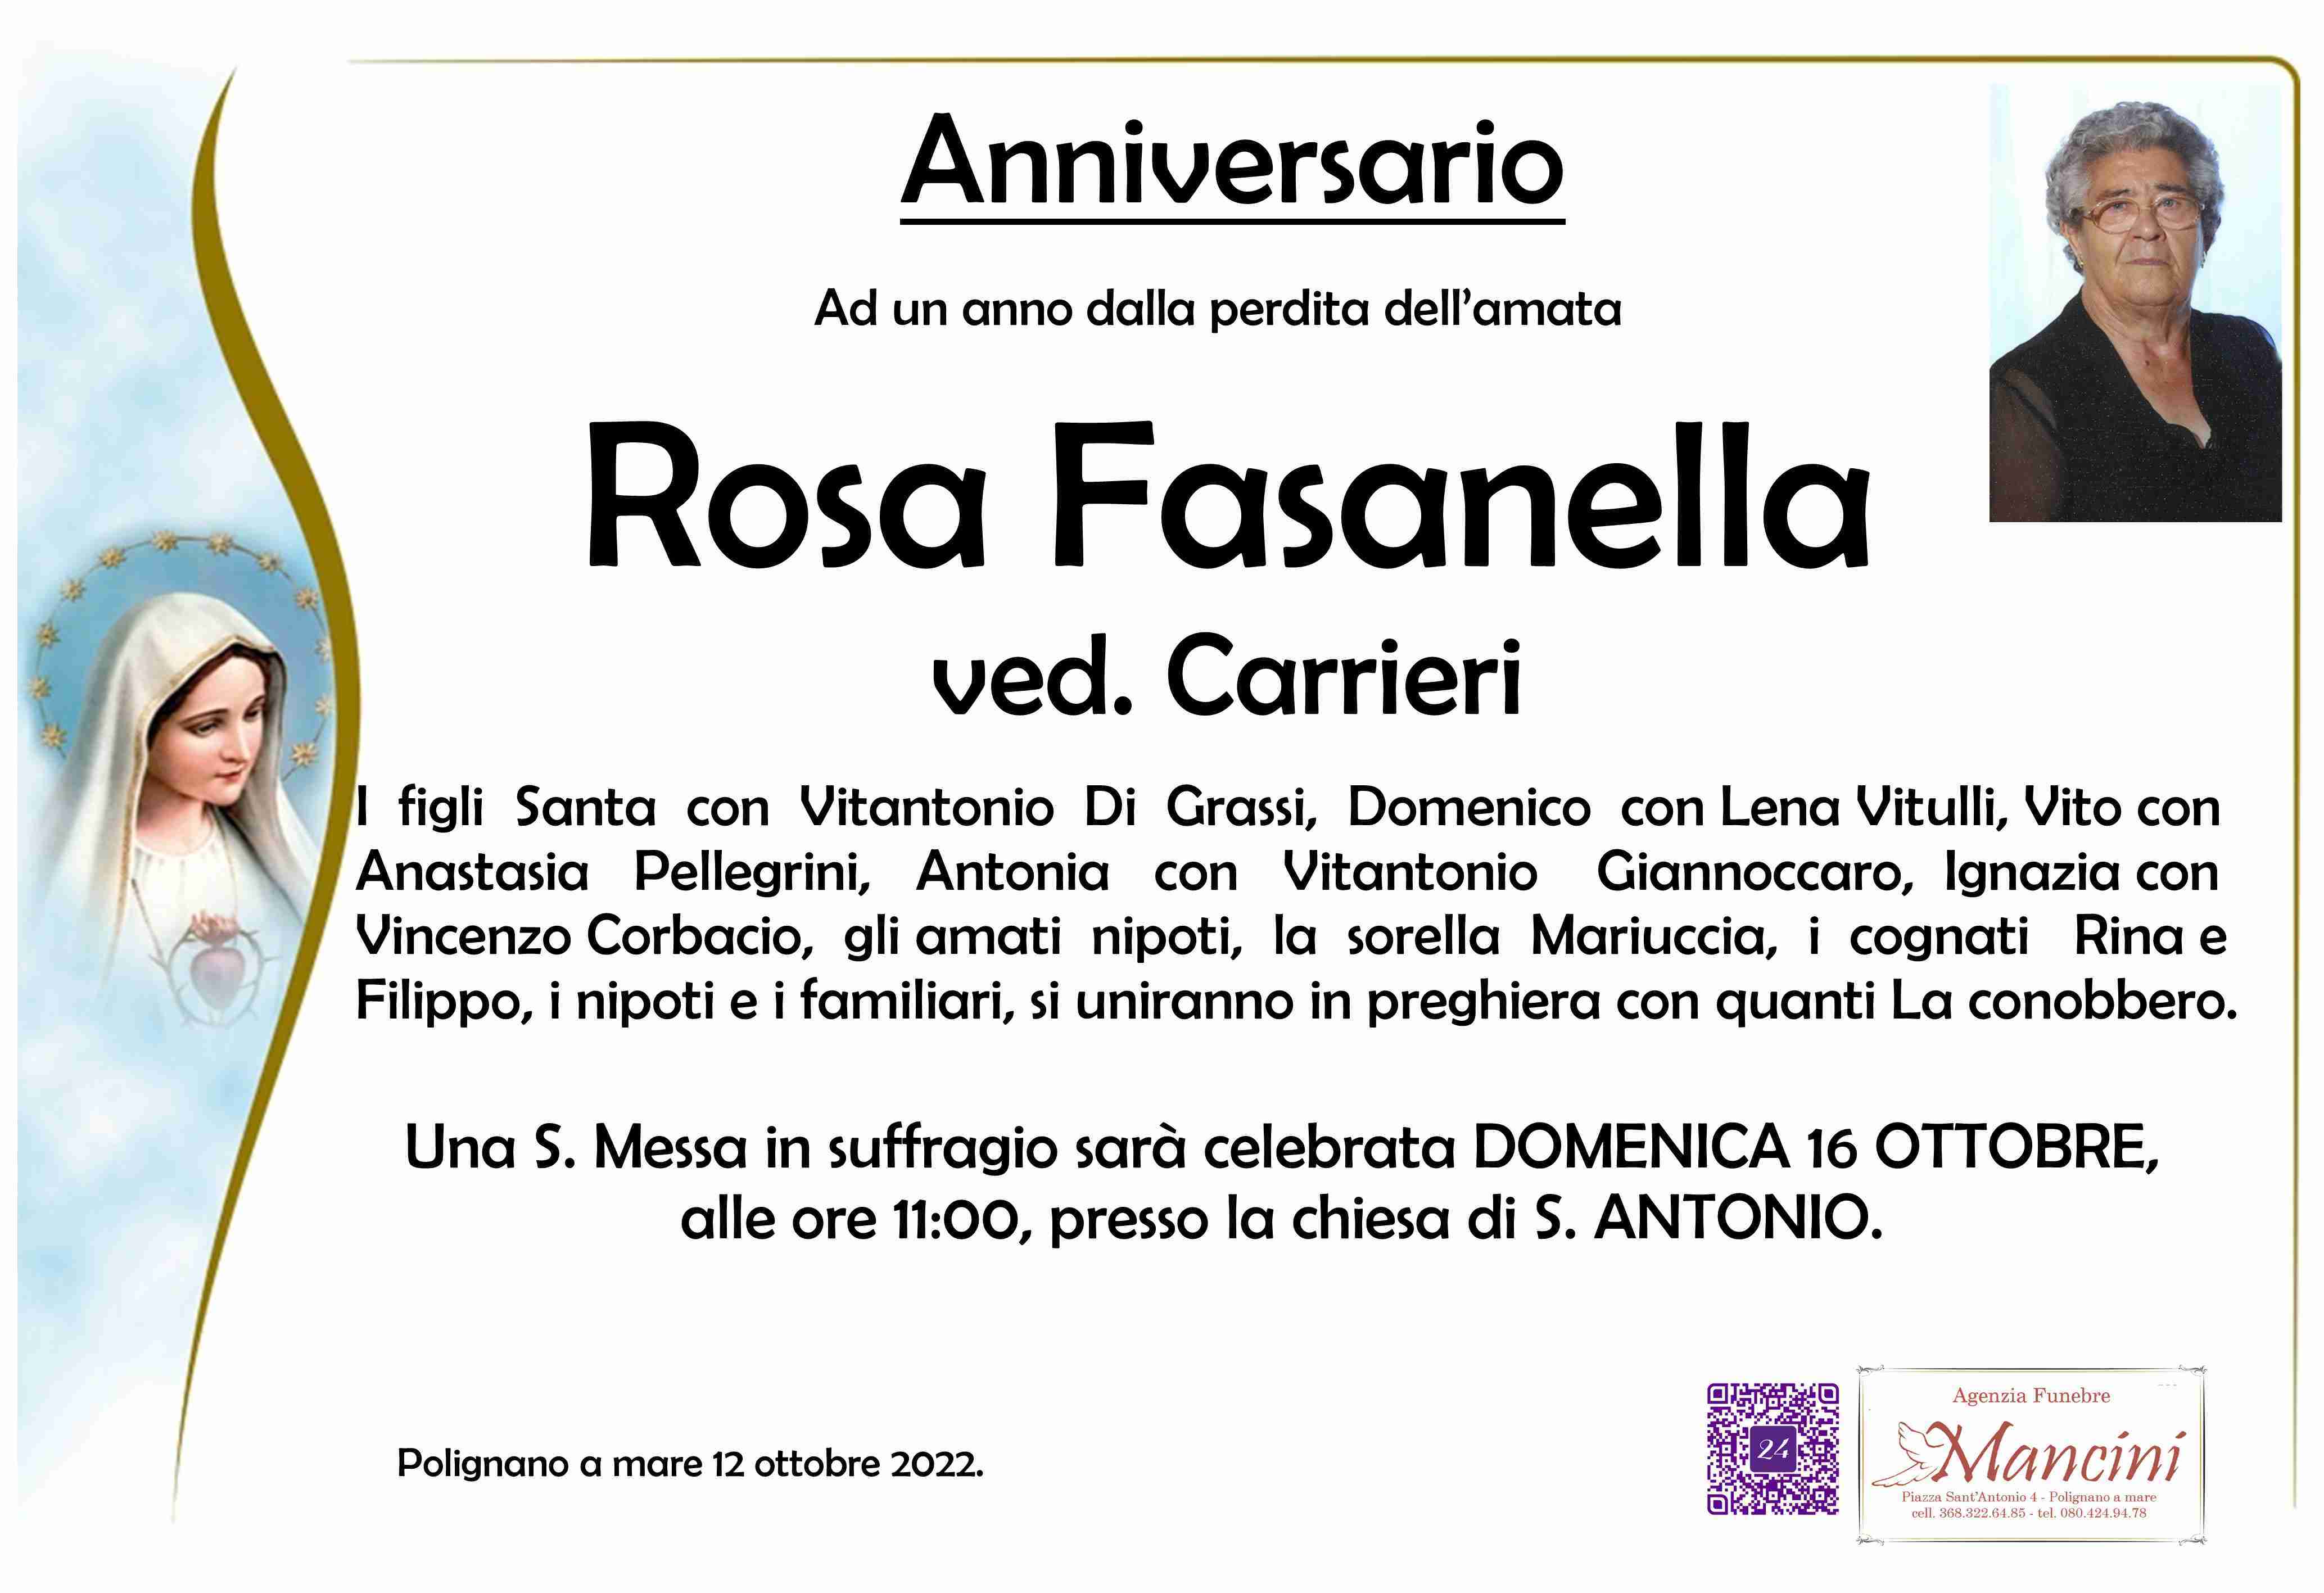 Rosa Fasanella